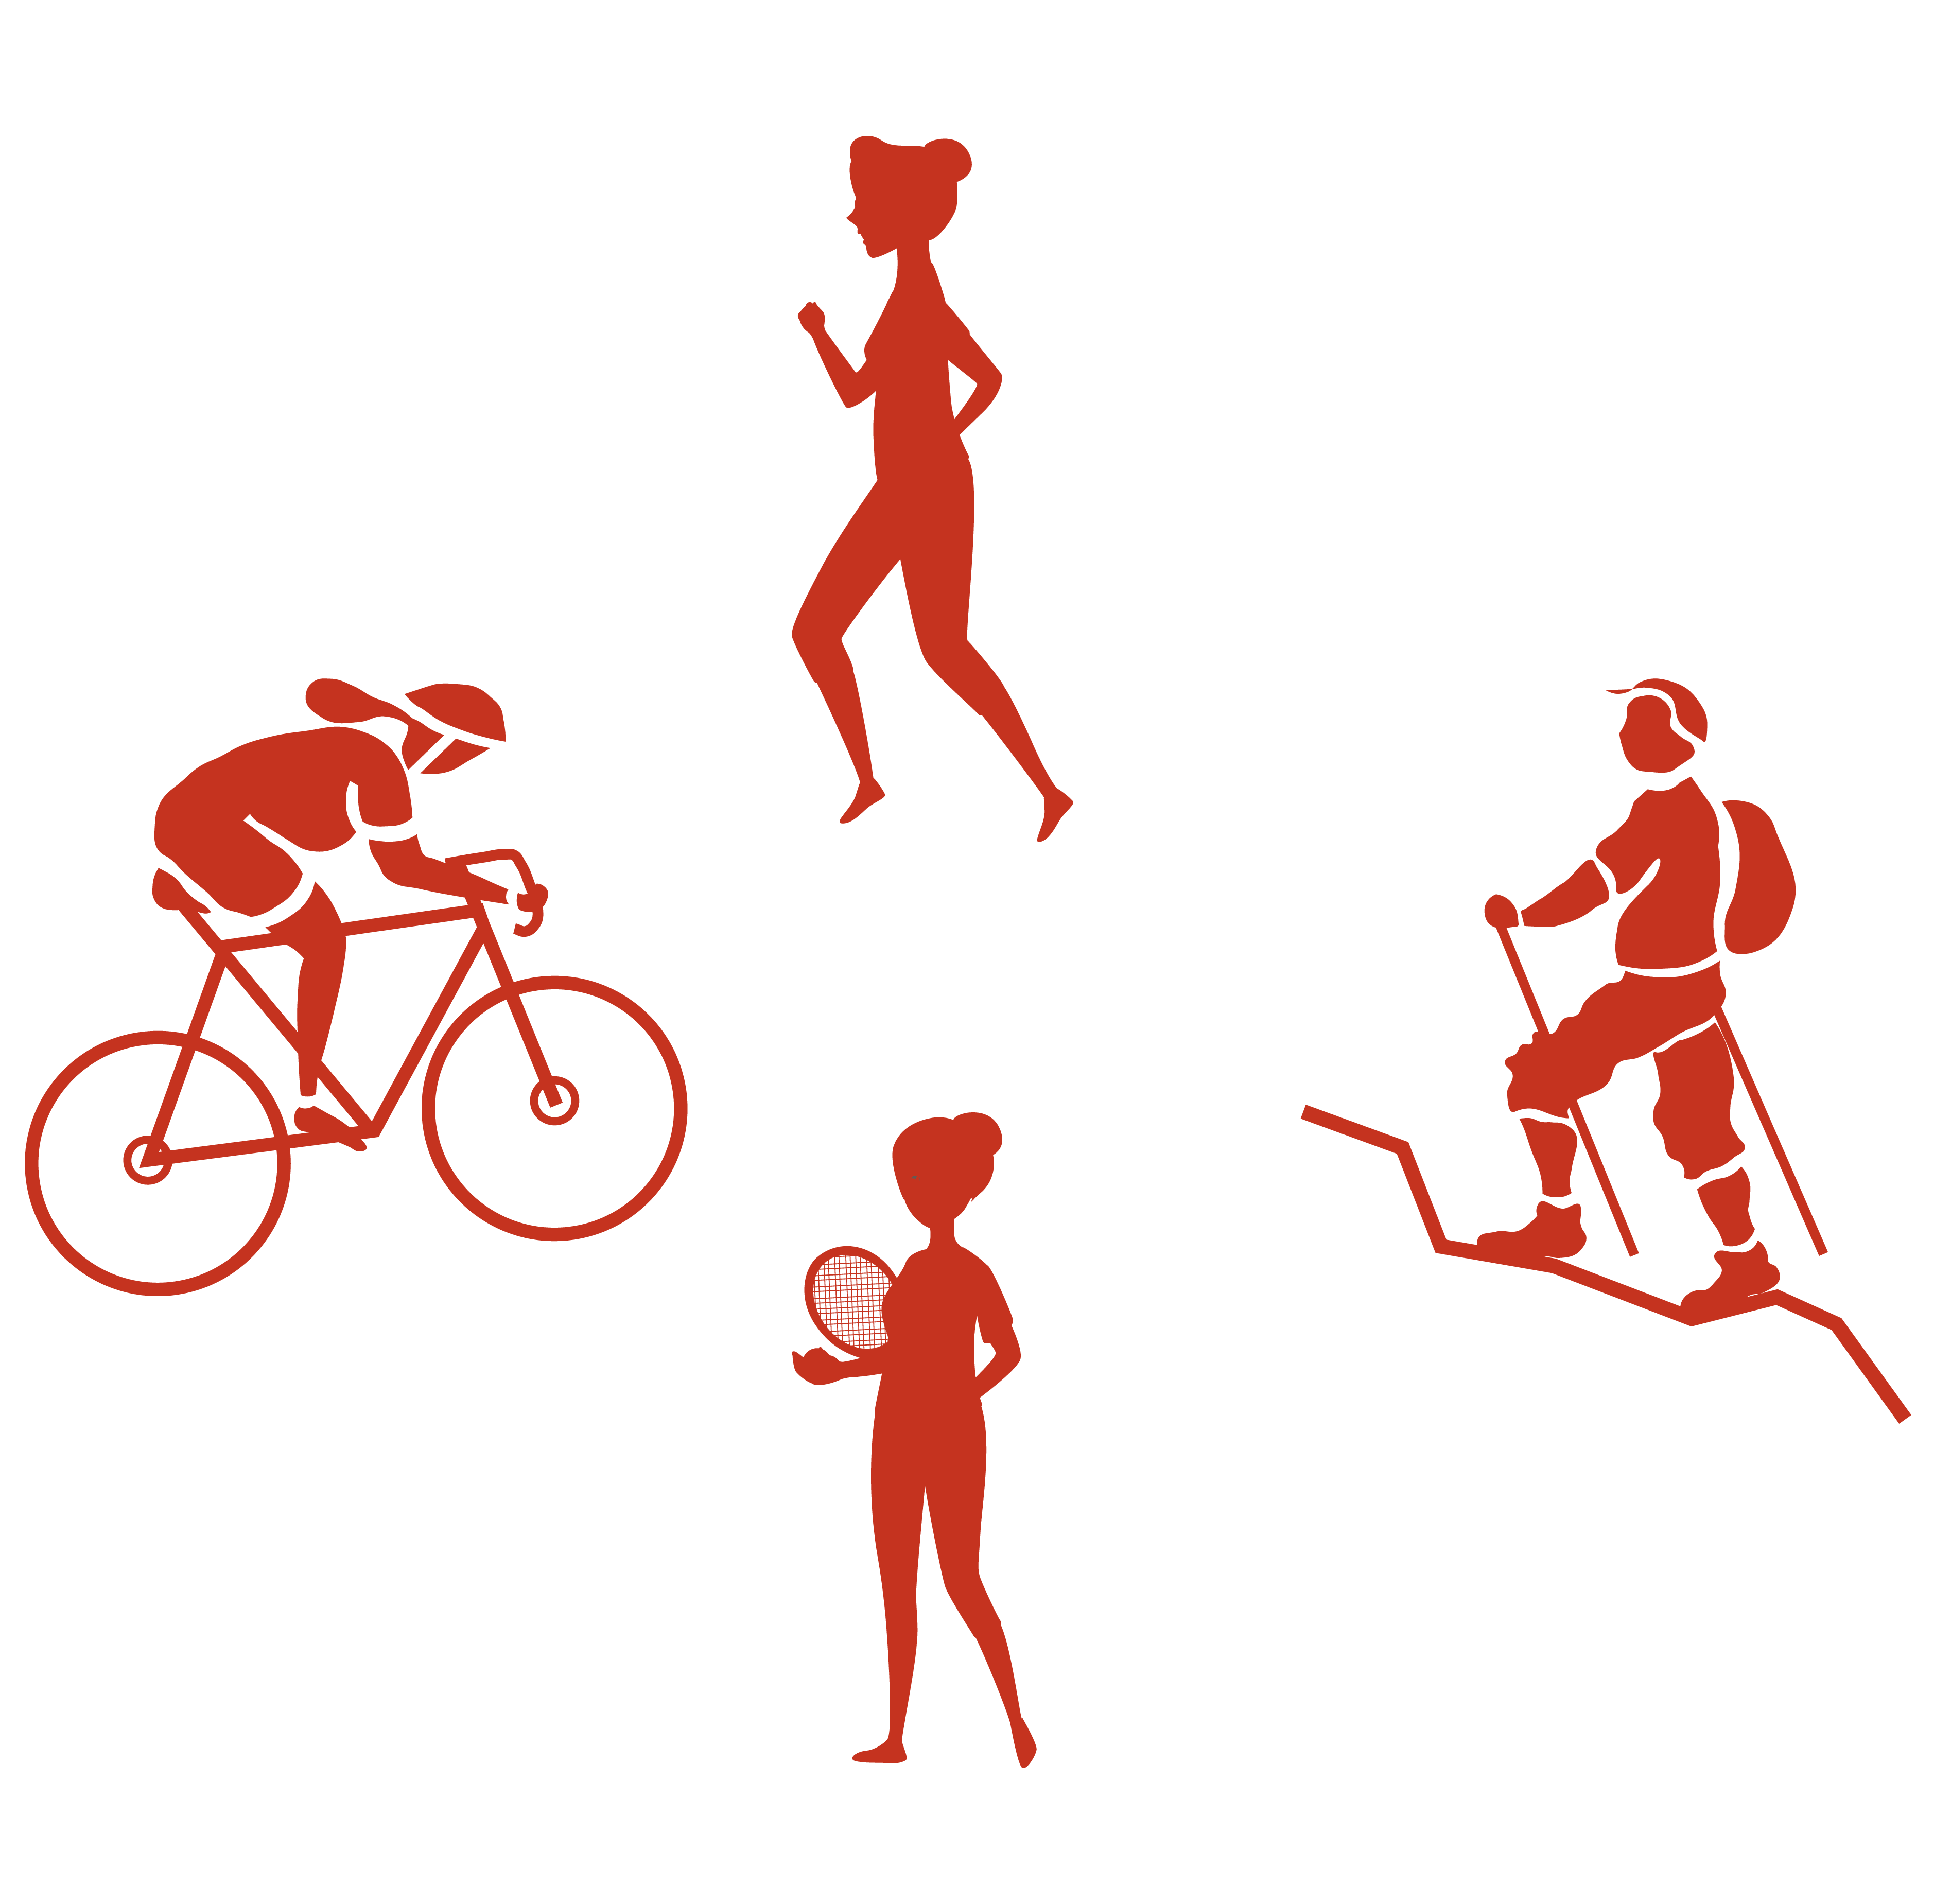 Grafik verschiedene Sportarten: Laufen, Radfahren, Tennis spielen, Wandern